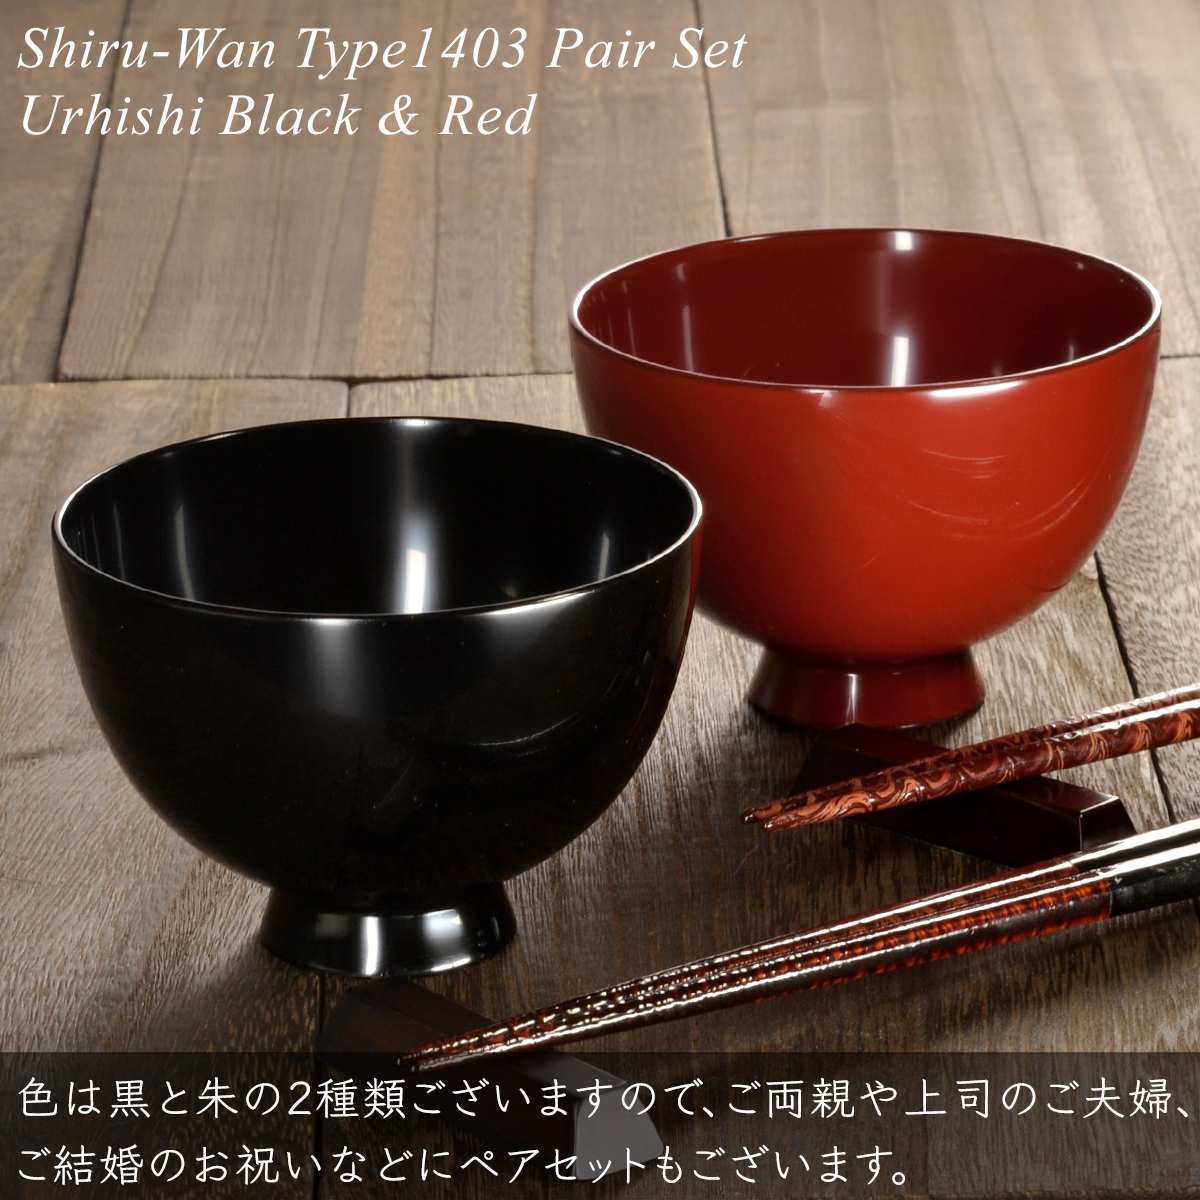 木製 汁椀 type1403 朱 漆塗り モダン 漆器 日本製 国産 食器洗浄機